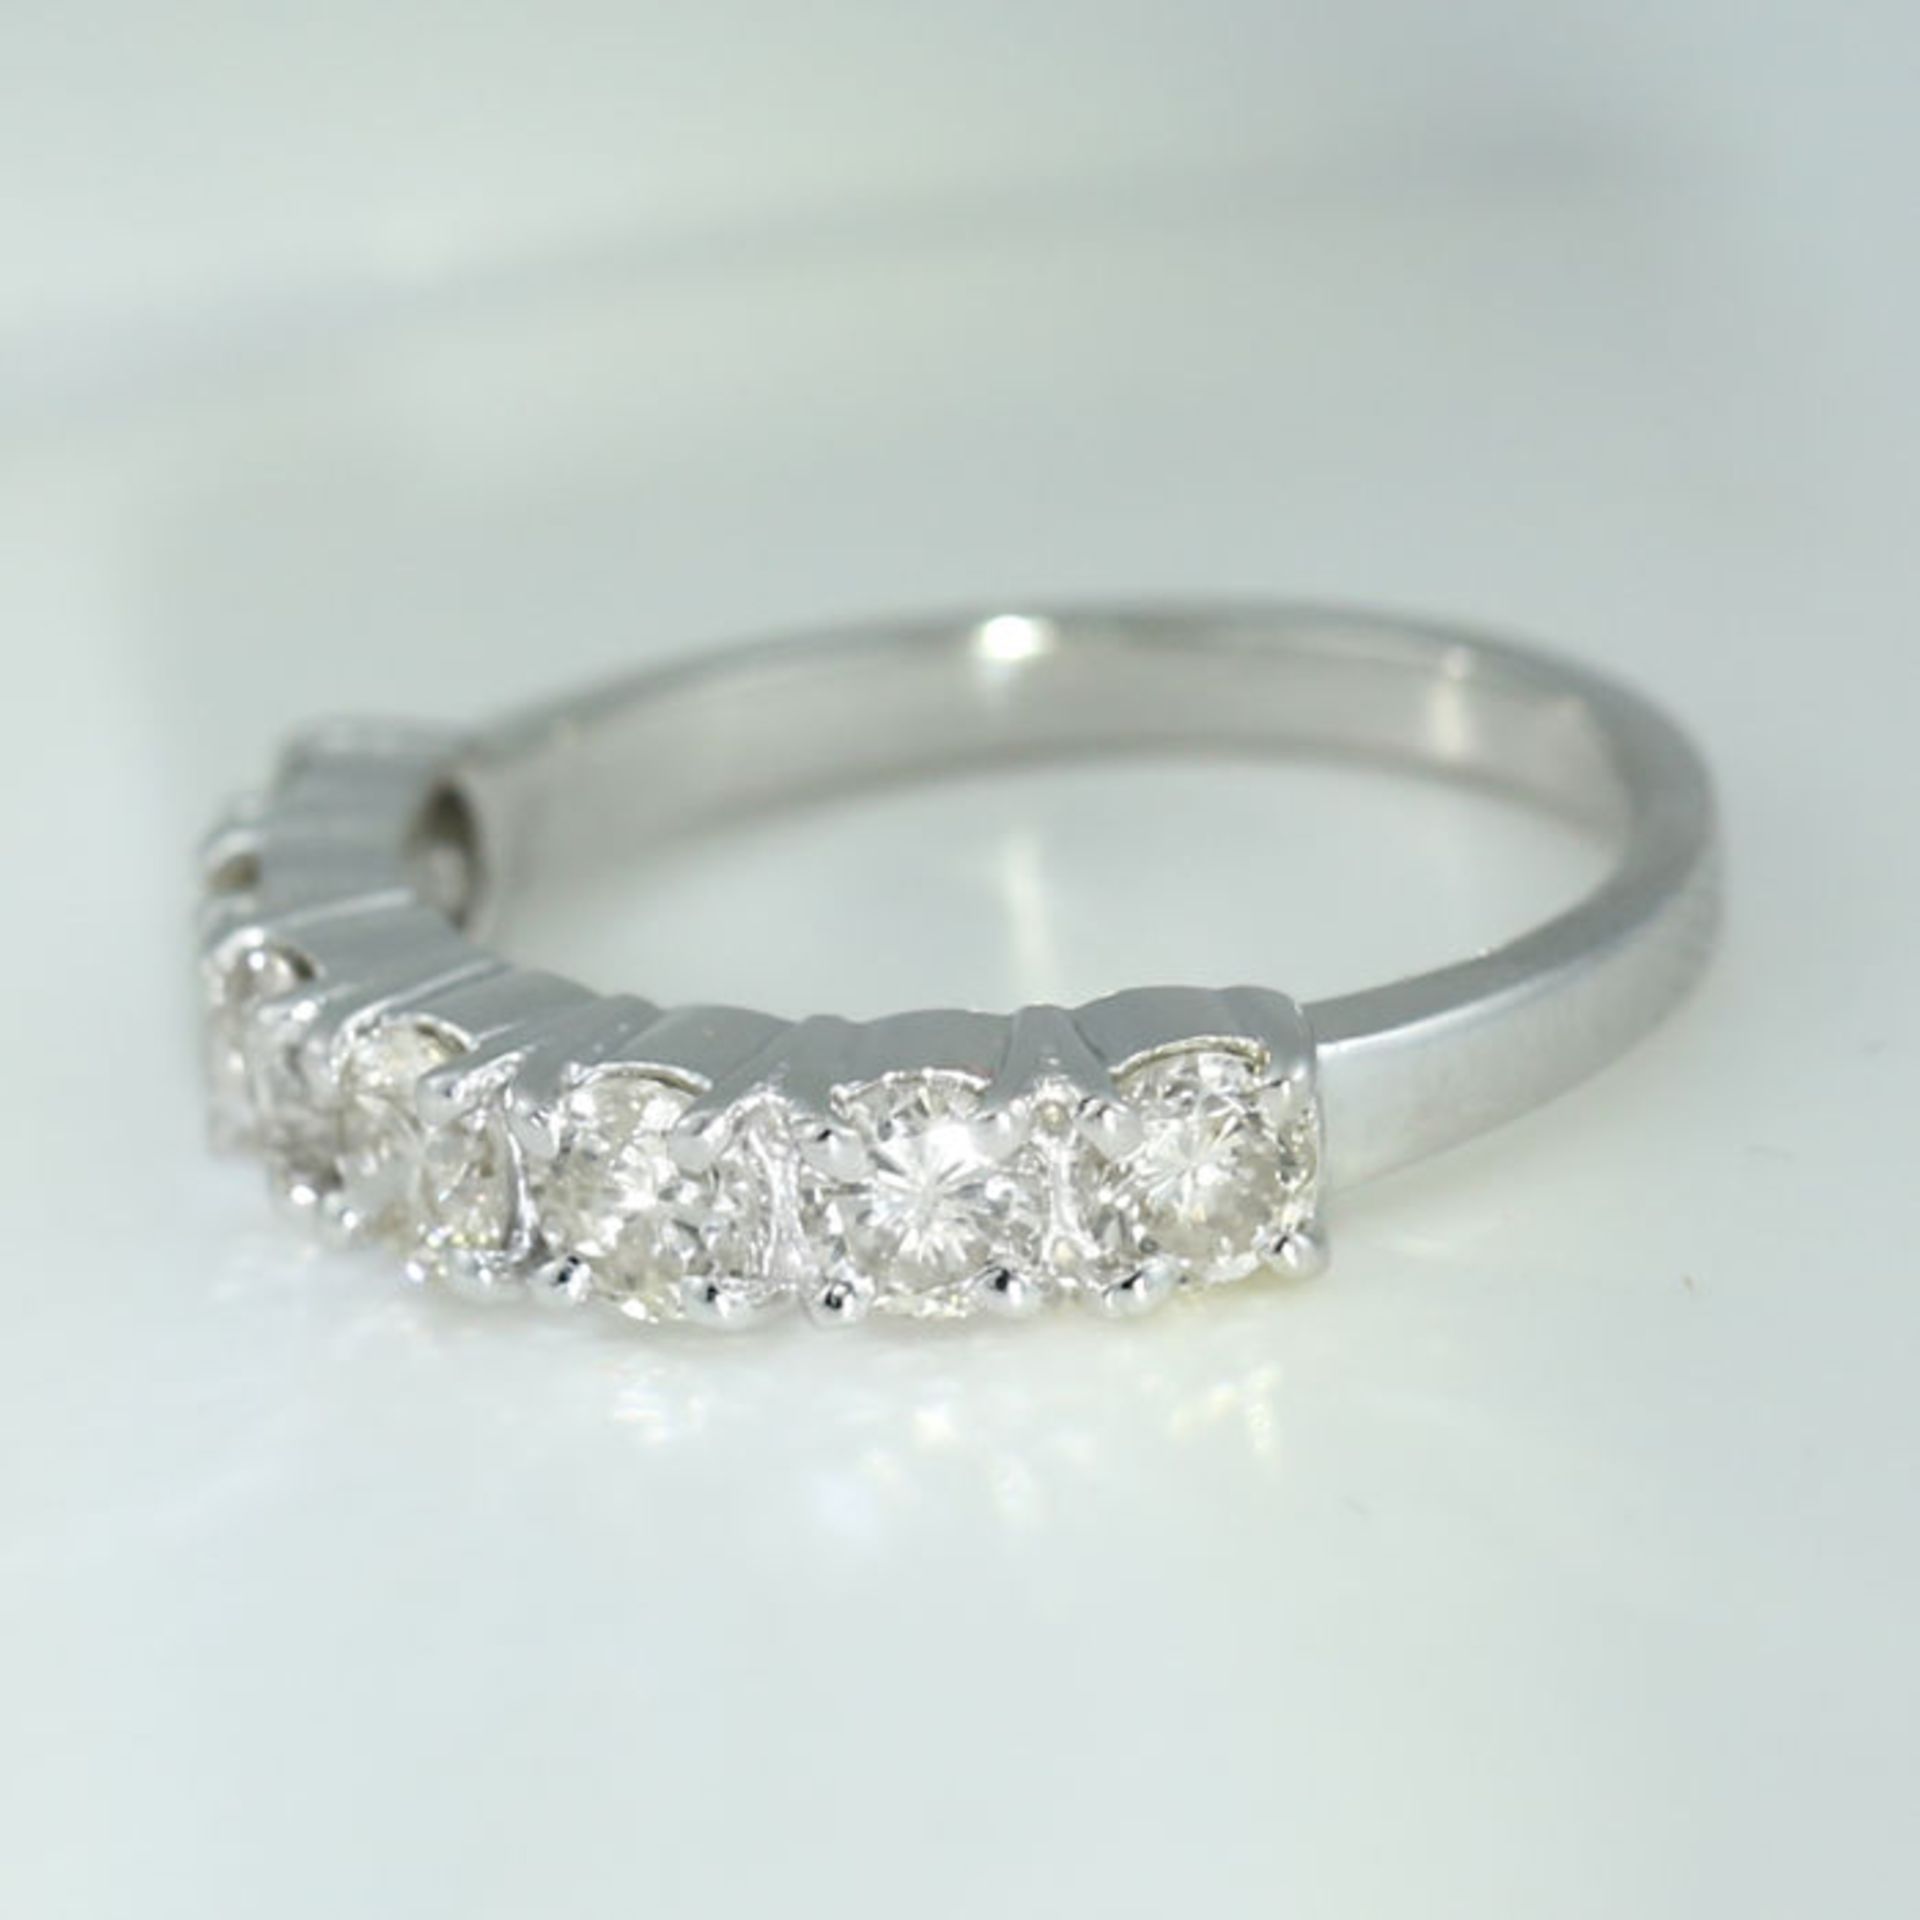 IGI Certified 14 K / 585 White Gold 7 Diamond Ring - Image 4 of 5